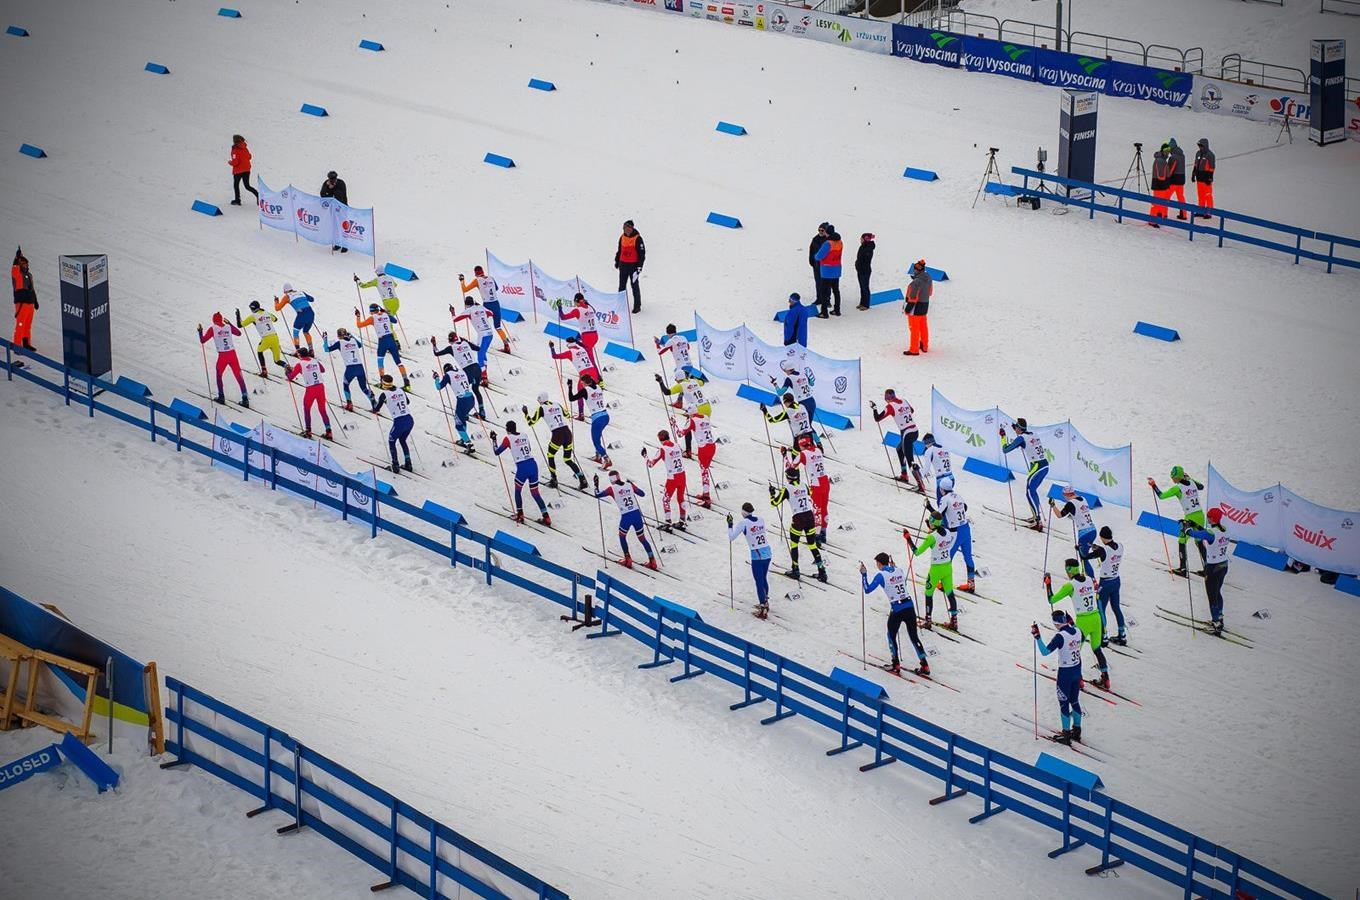 Svátek lyžování v Novém Městě se blíží! Světový pohár v běhu na lyžích 2020 představí běžkařskou eli